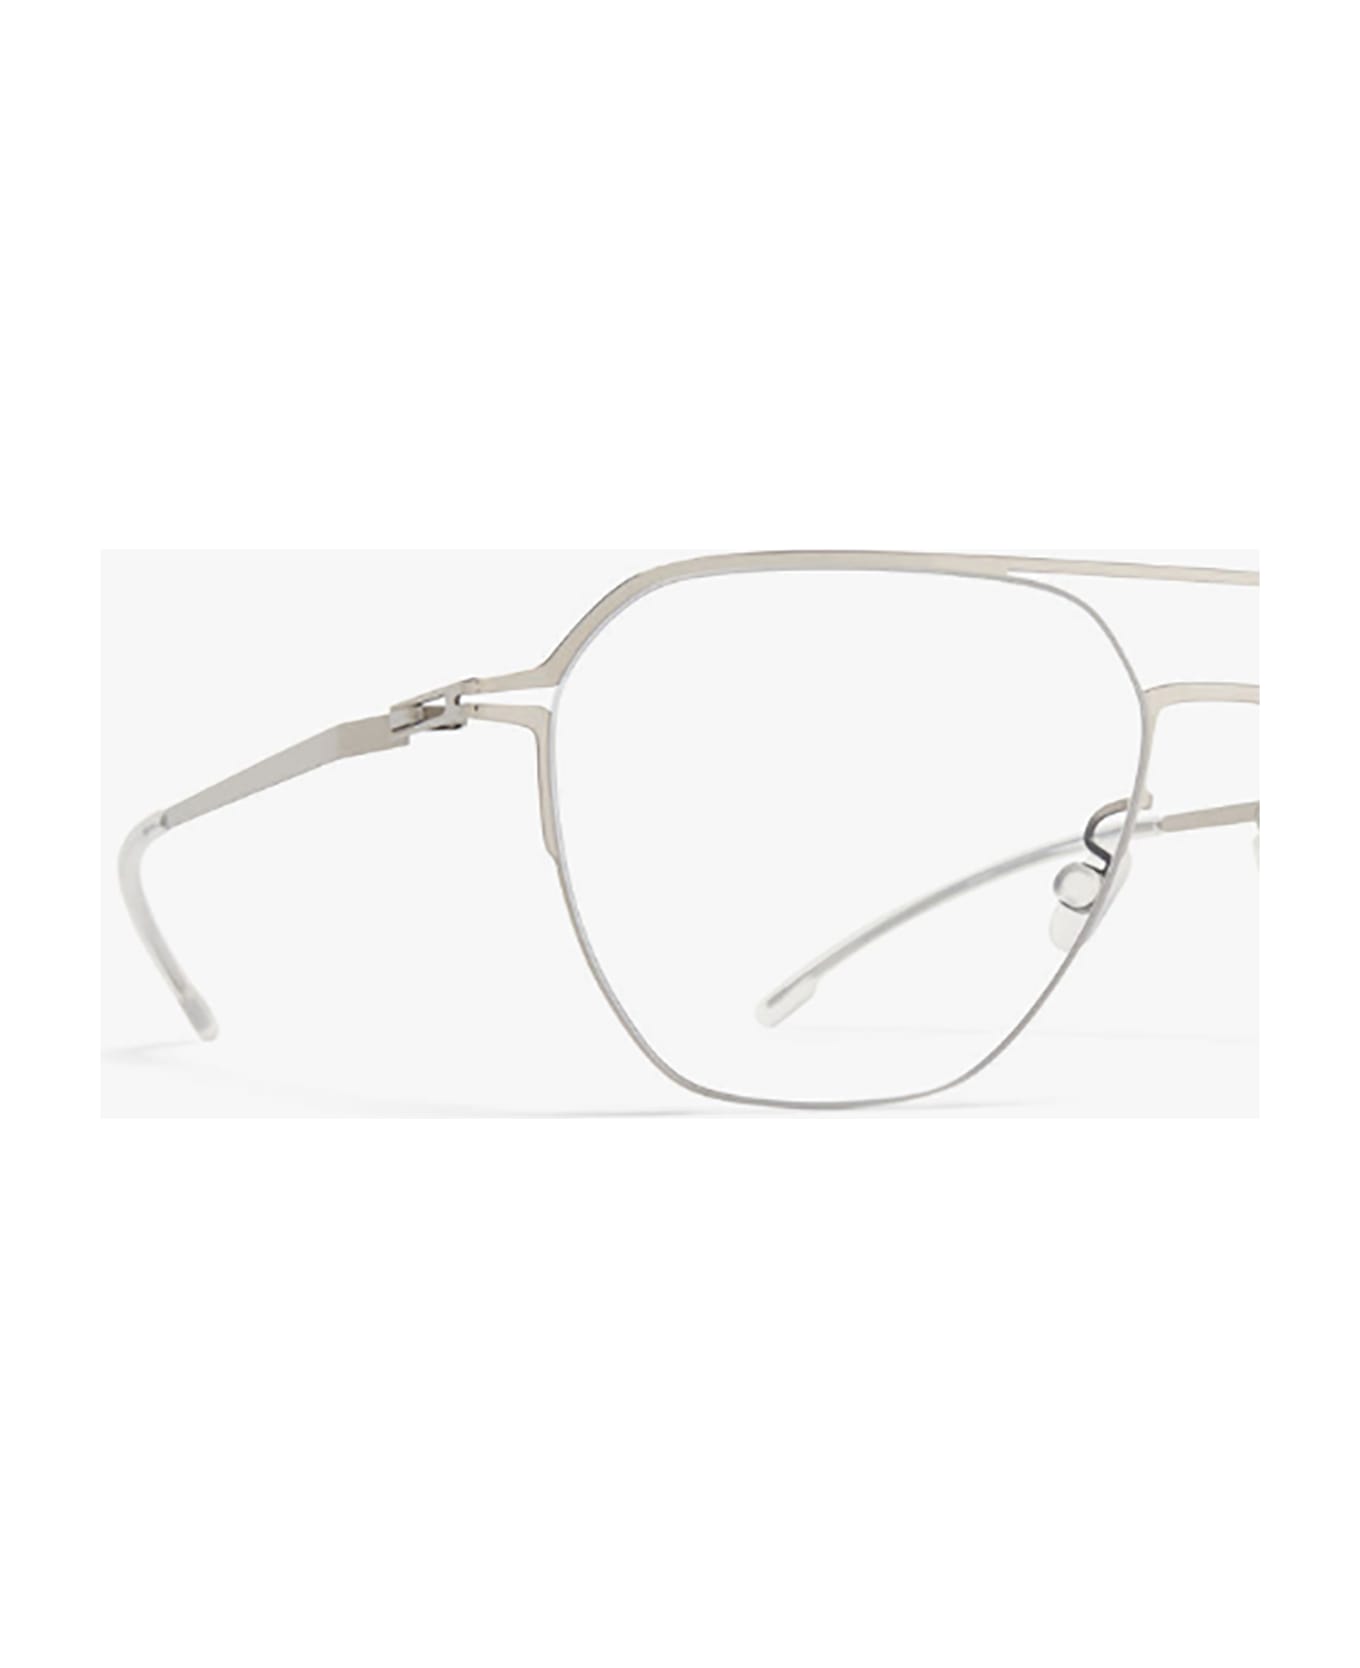 Mykita IMBA Eyewear - Shiny Silver Clear